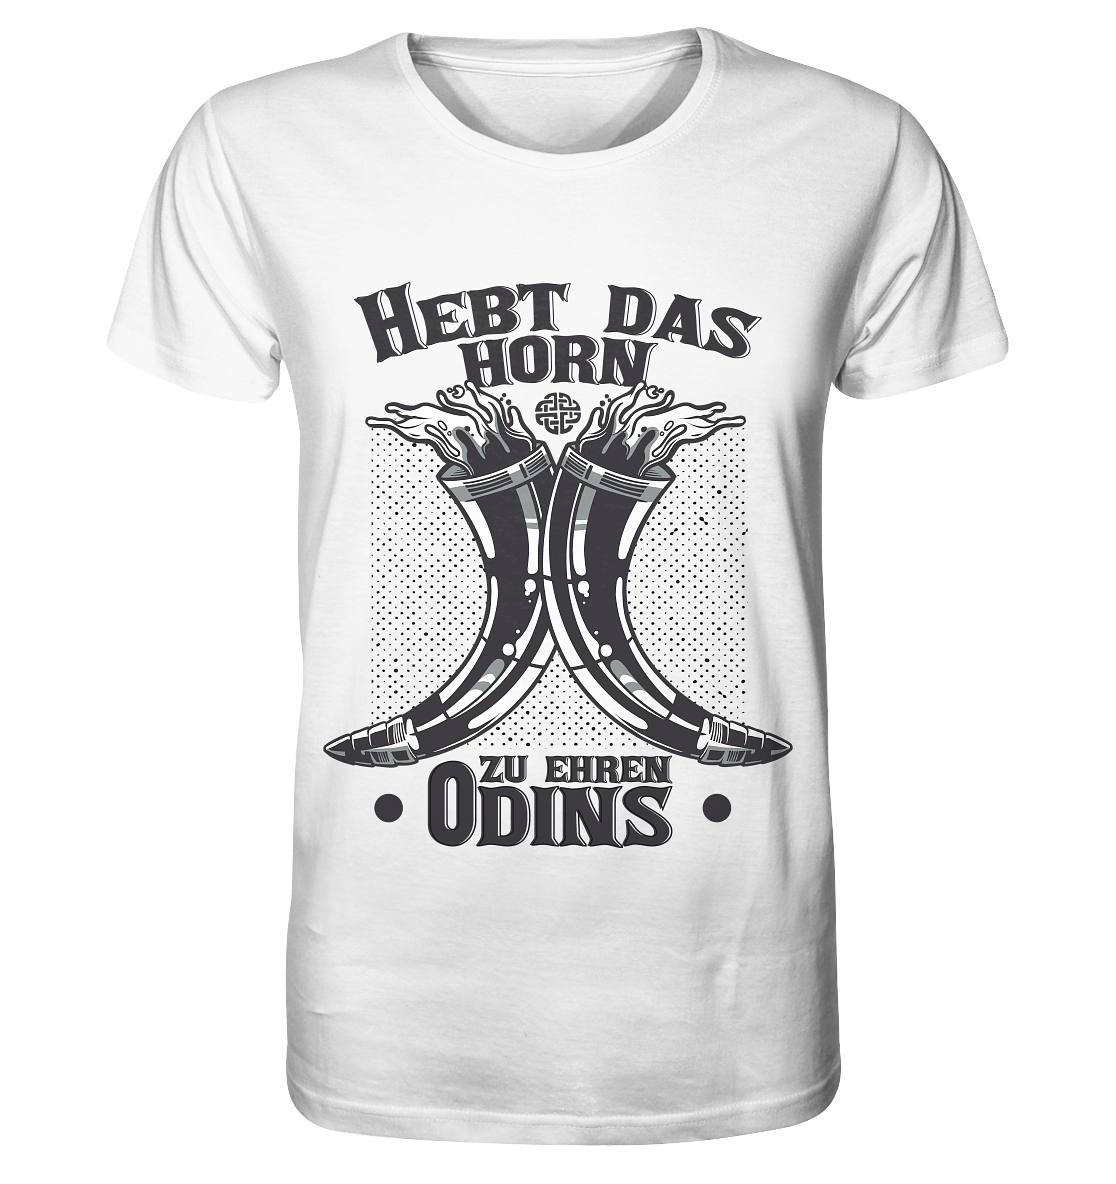 Hebt das Horn zu Ehren Odins - Organic Shirt